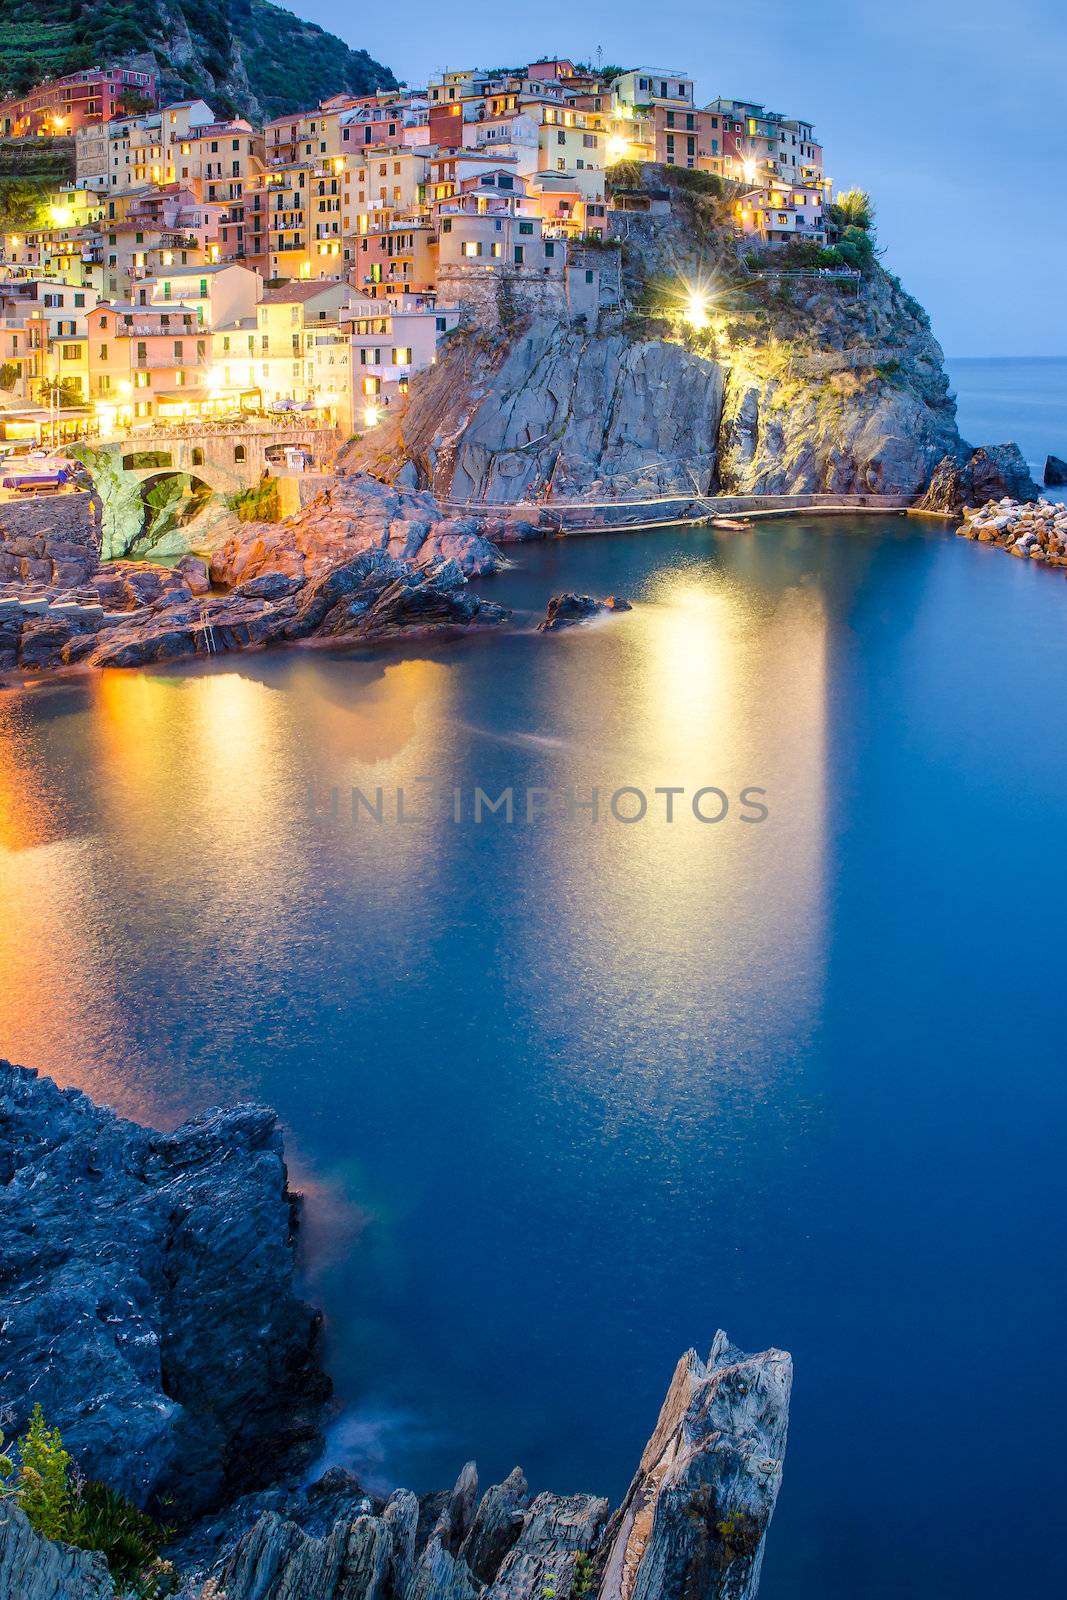 Night view of colorful village Manarola, Cinque Terre by martinm303